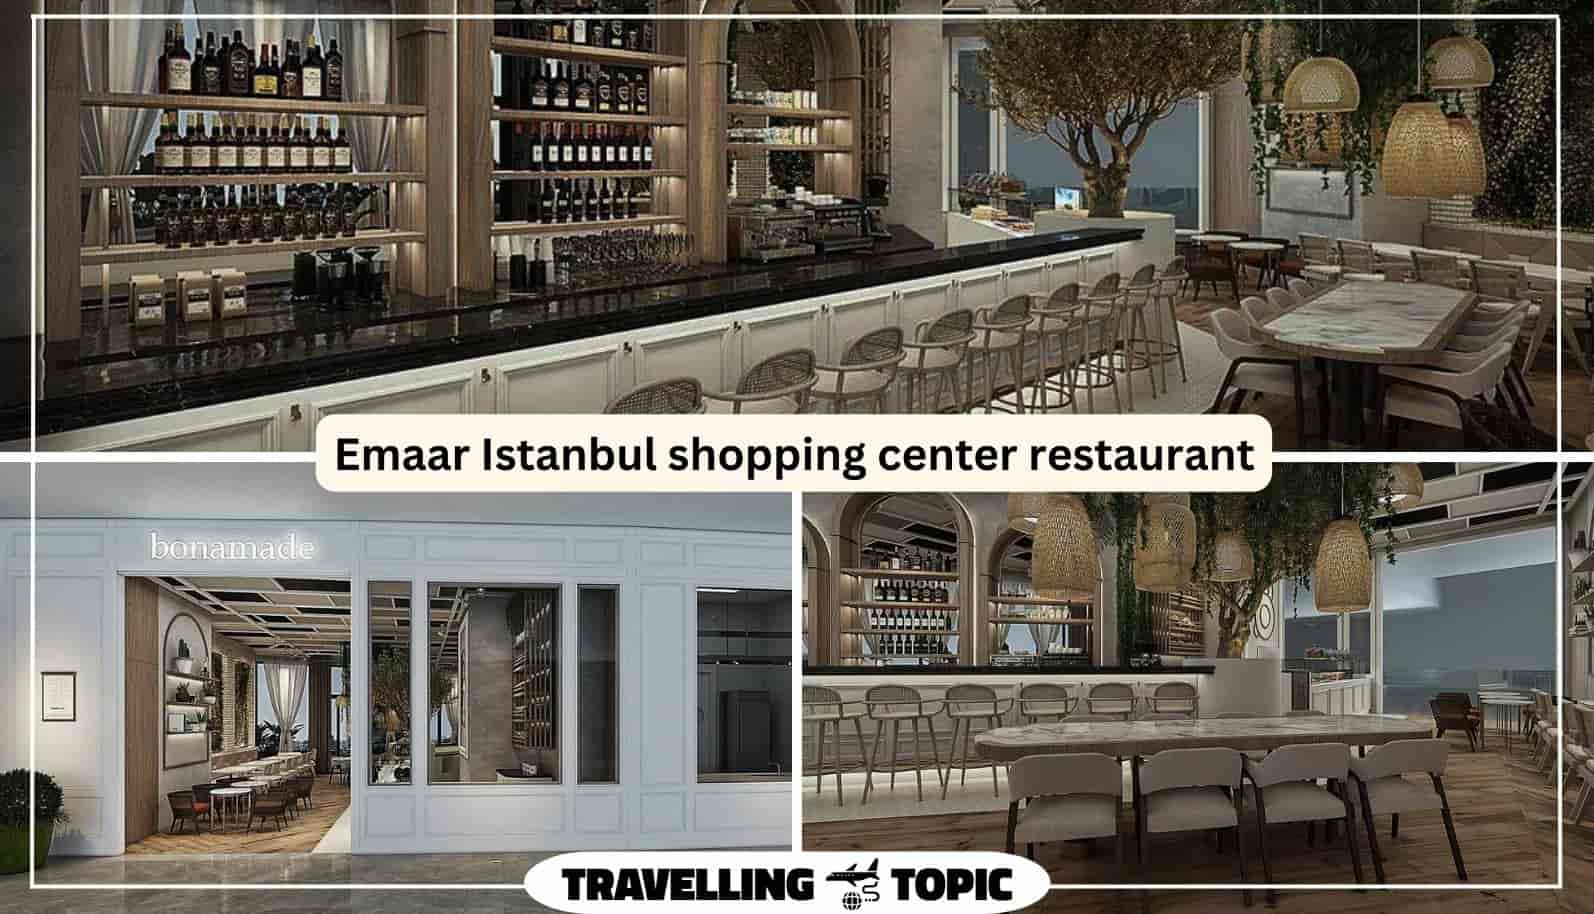 Emaar Istanbul shopping center restaurant